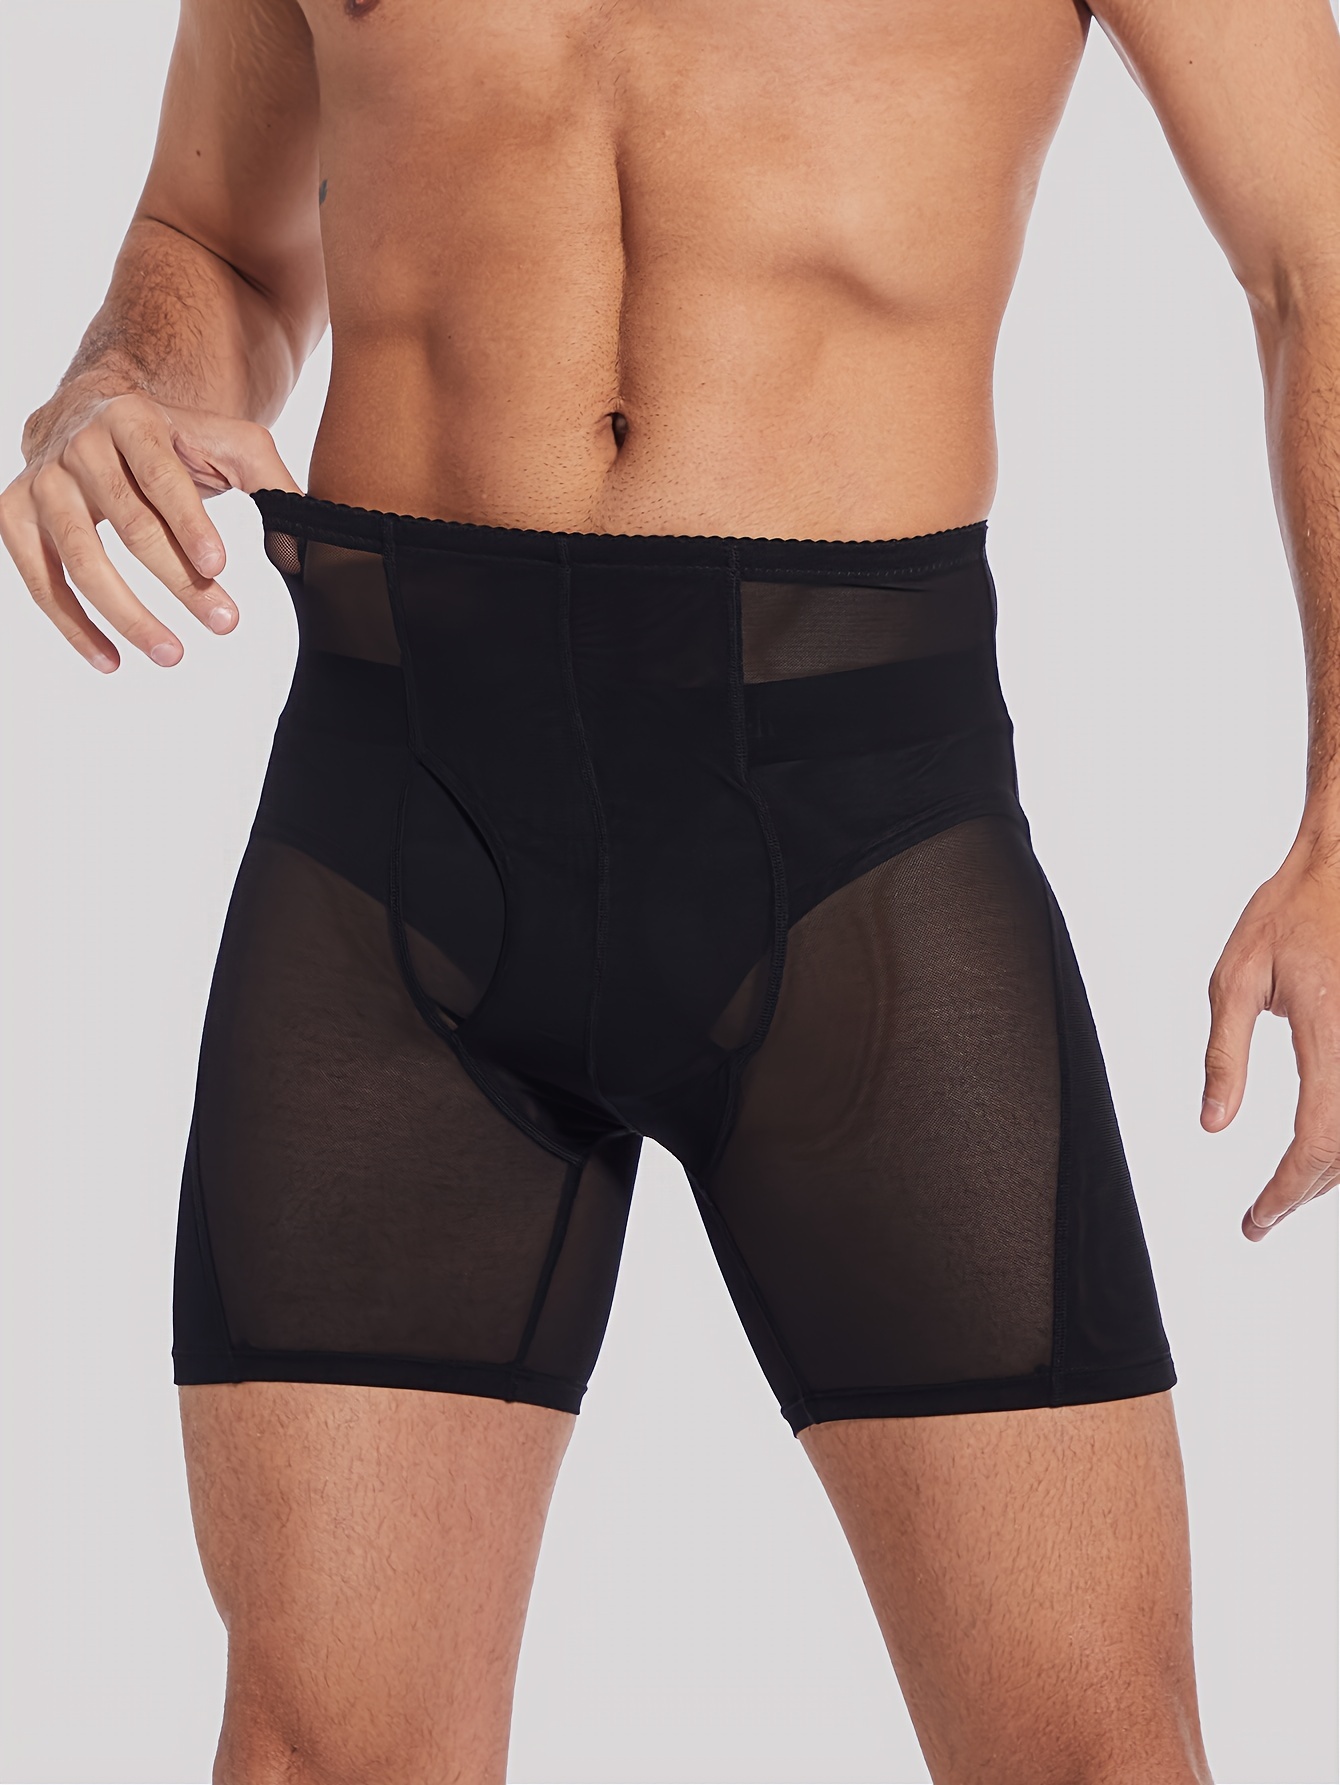 Bulge Enhancing Underwear Review - Temu